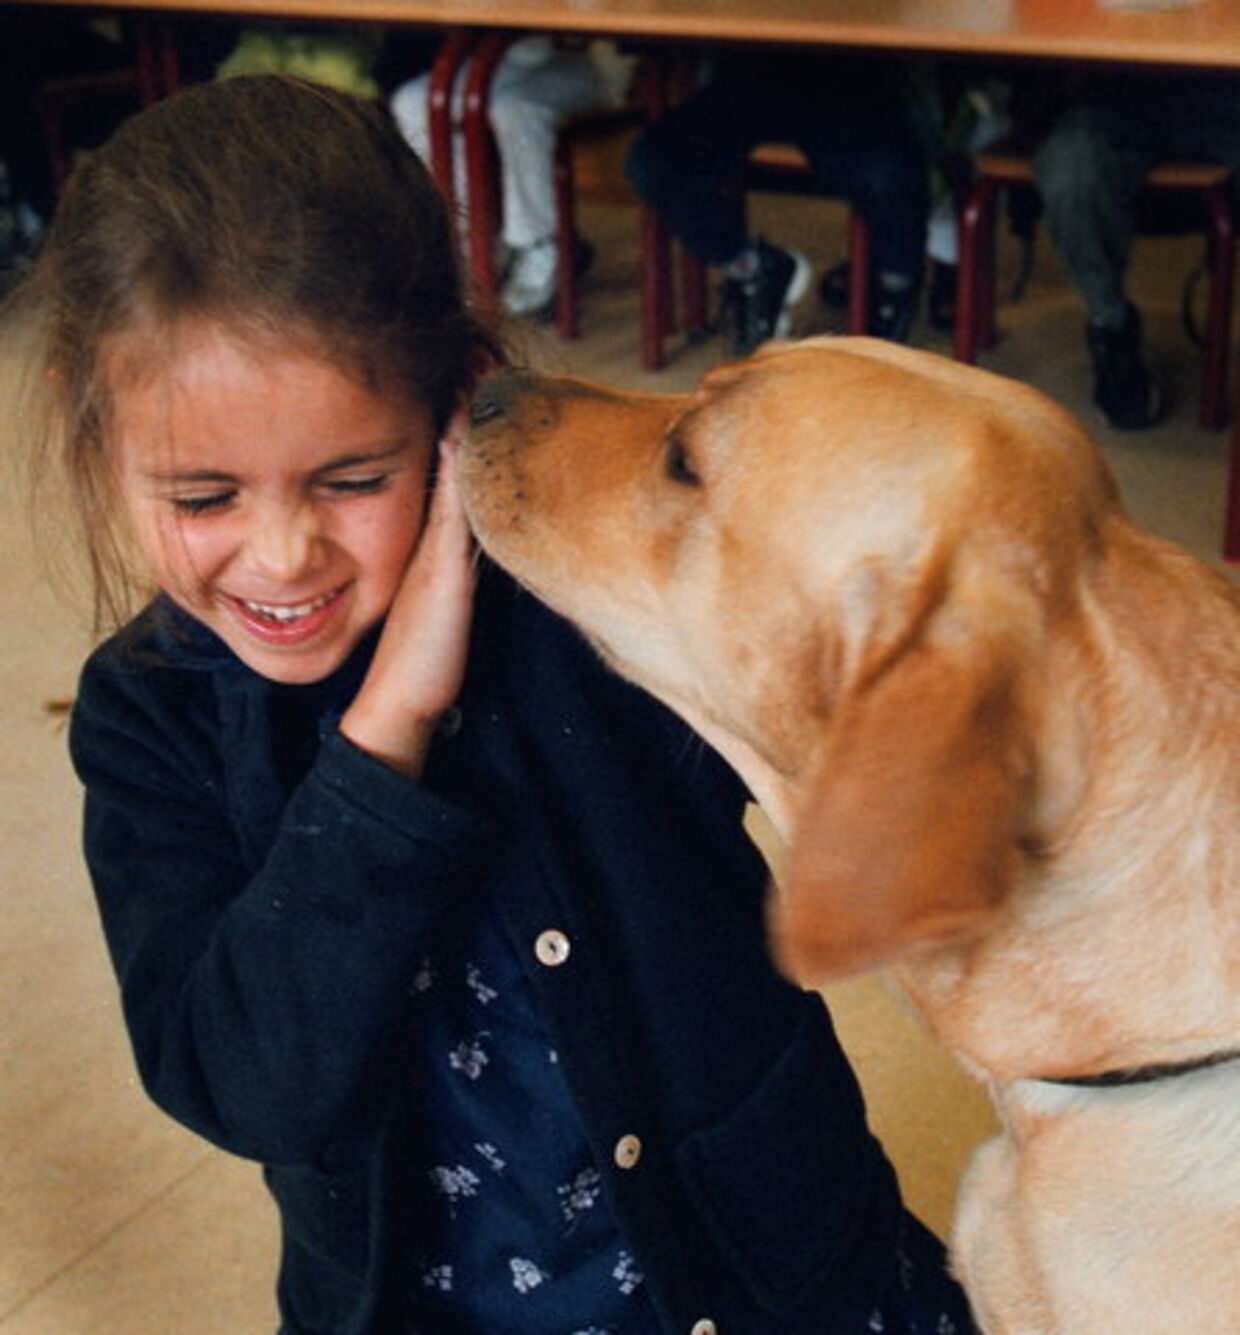 Det går oftest ud over de mindste, når børn bliver bidt af hunde. Foto: Mogens Ladegaard